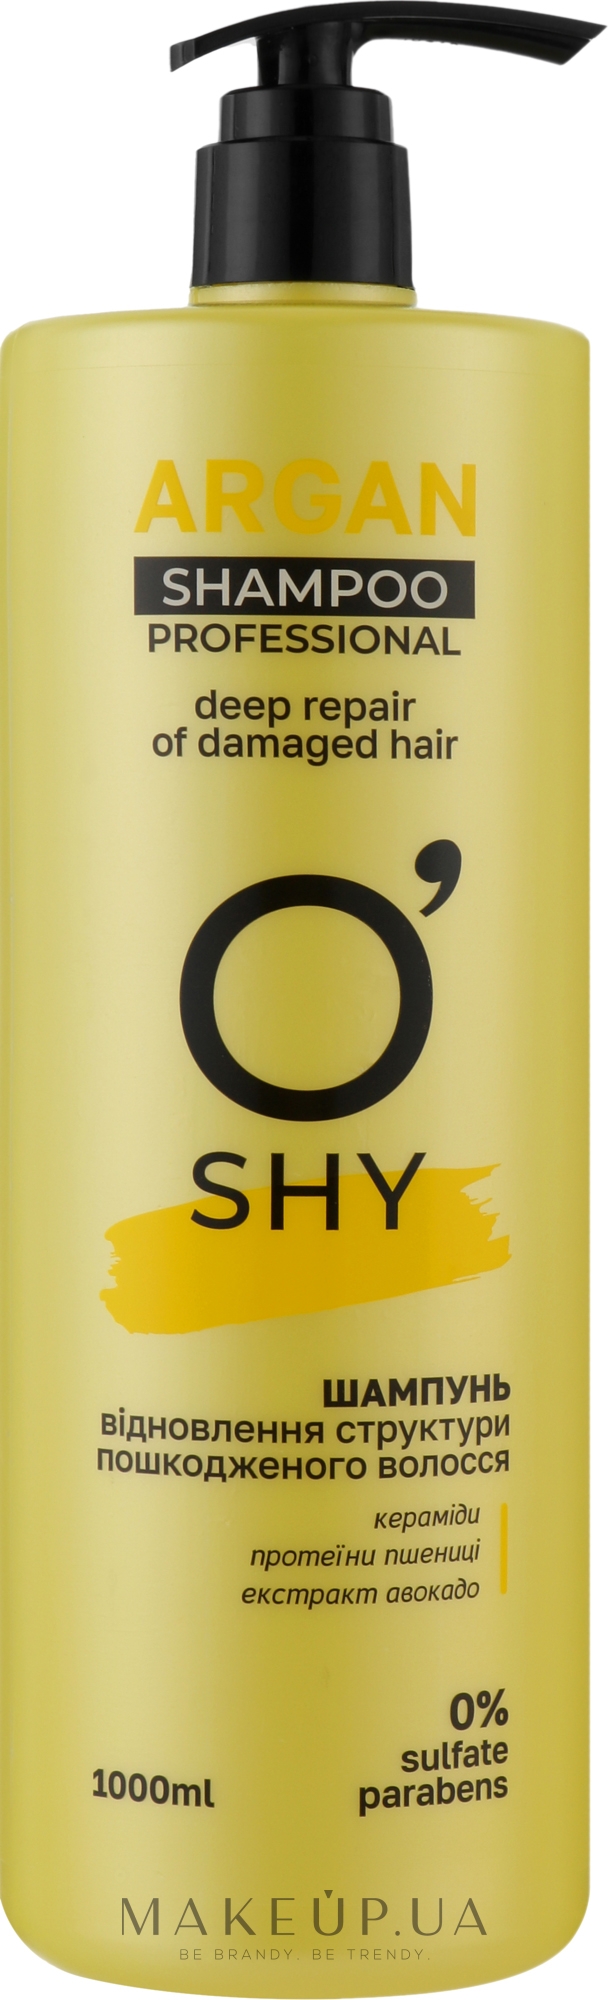 Шампунь "Відновлення структури пошкодженого волосся" - O'Shy Argan Professional Shampoo — фото 1000ml